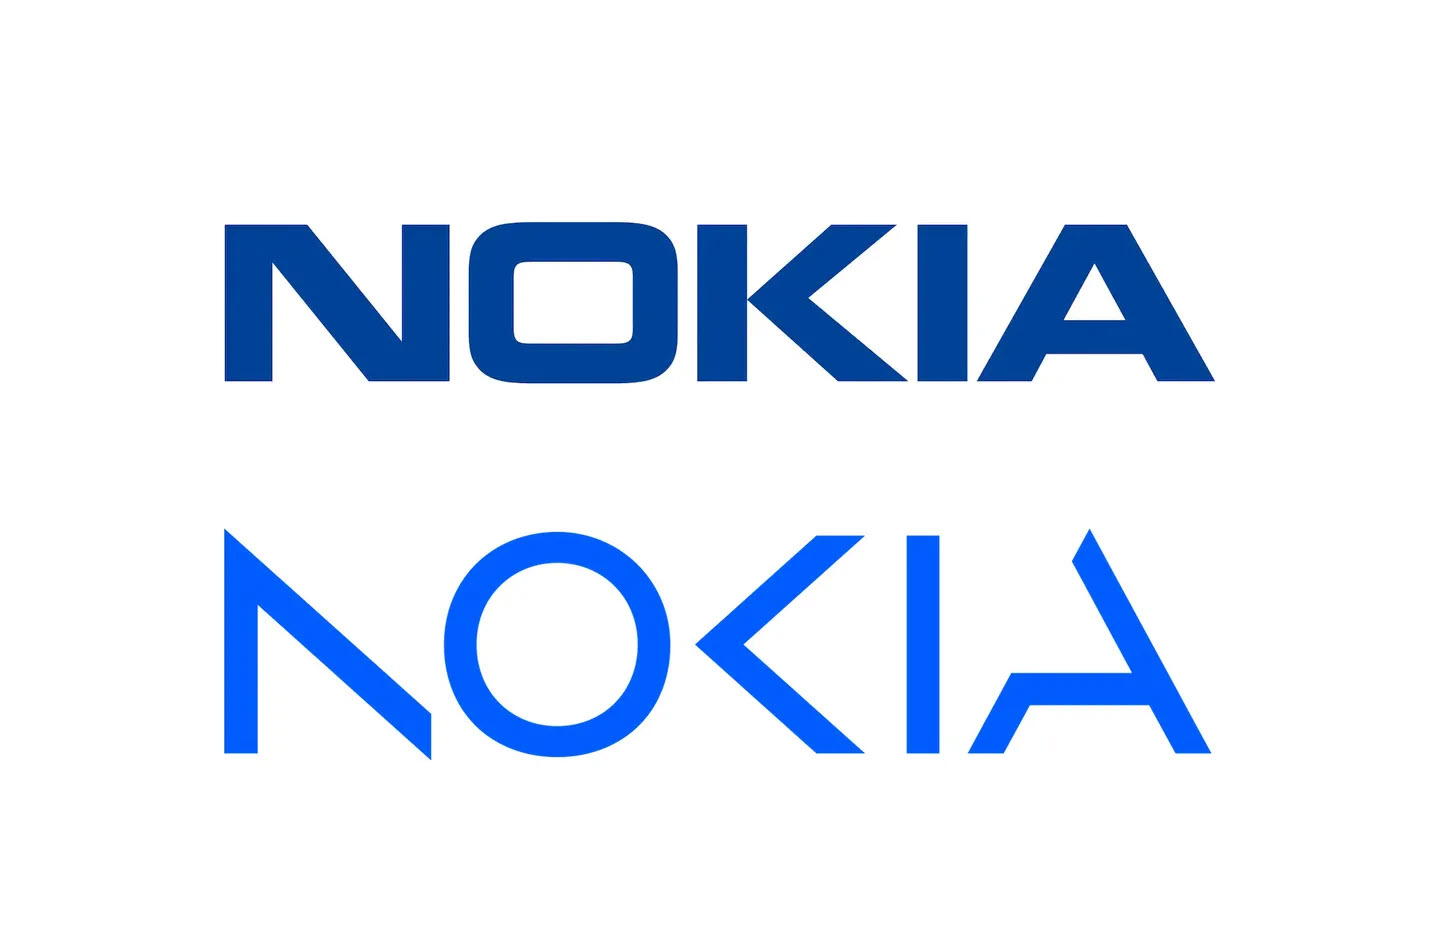 Логотип Nokia